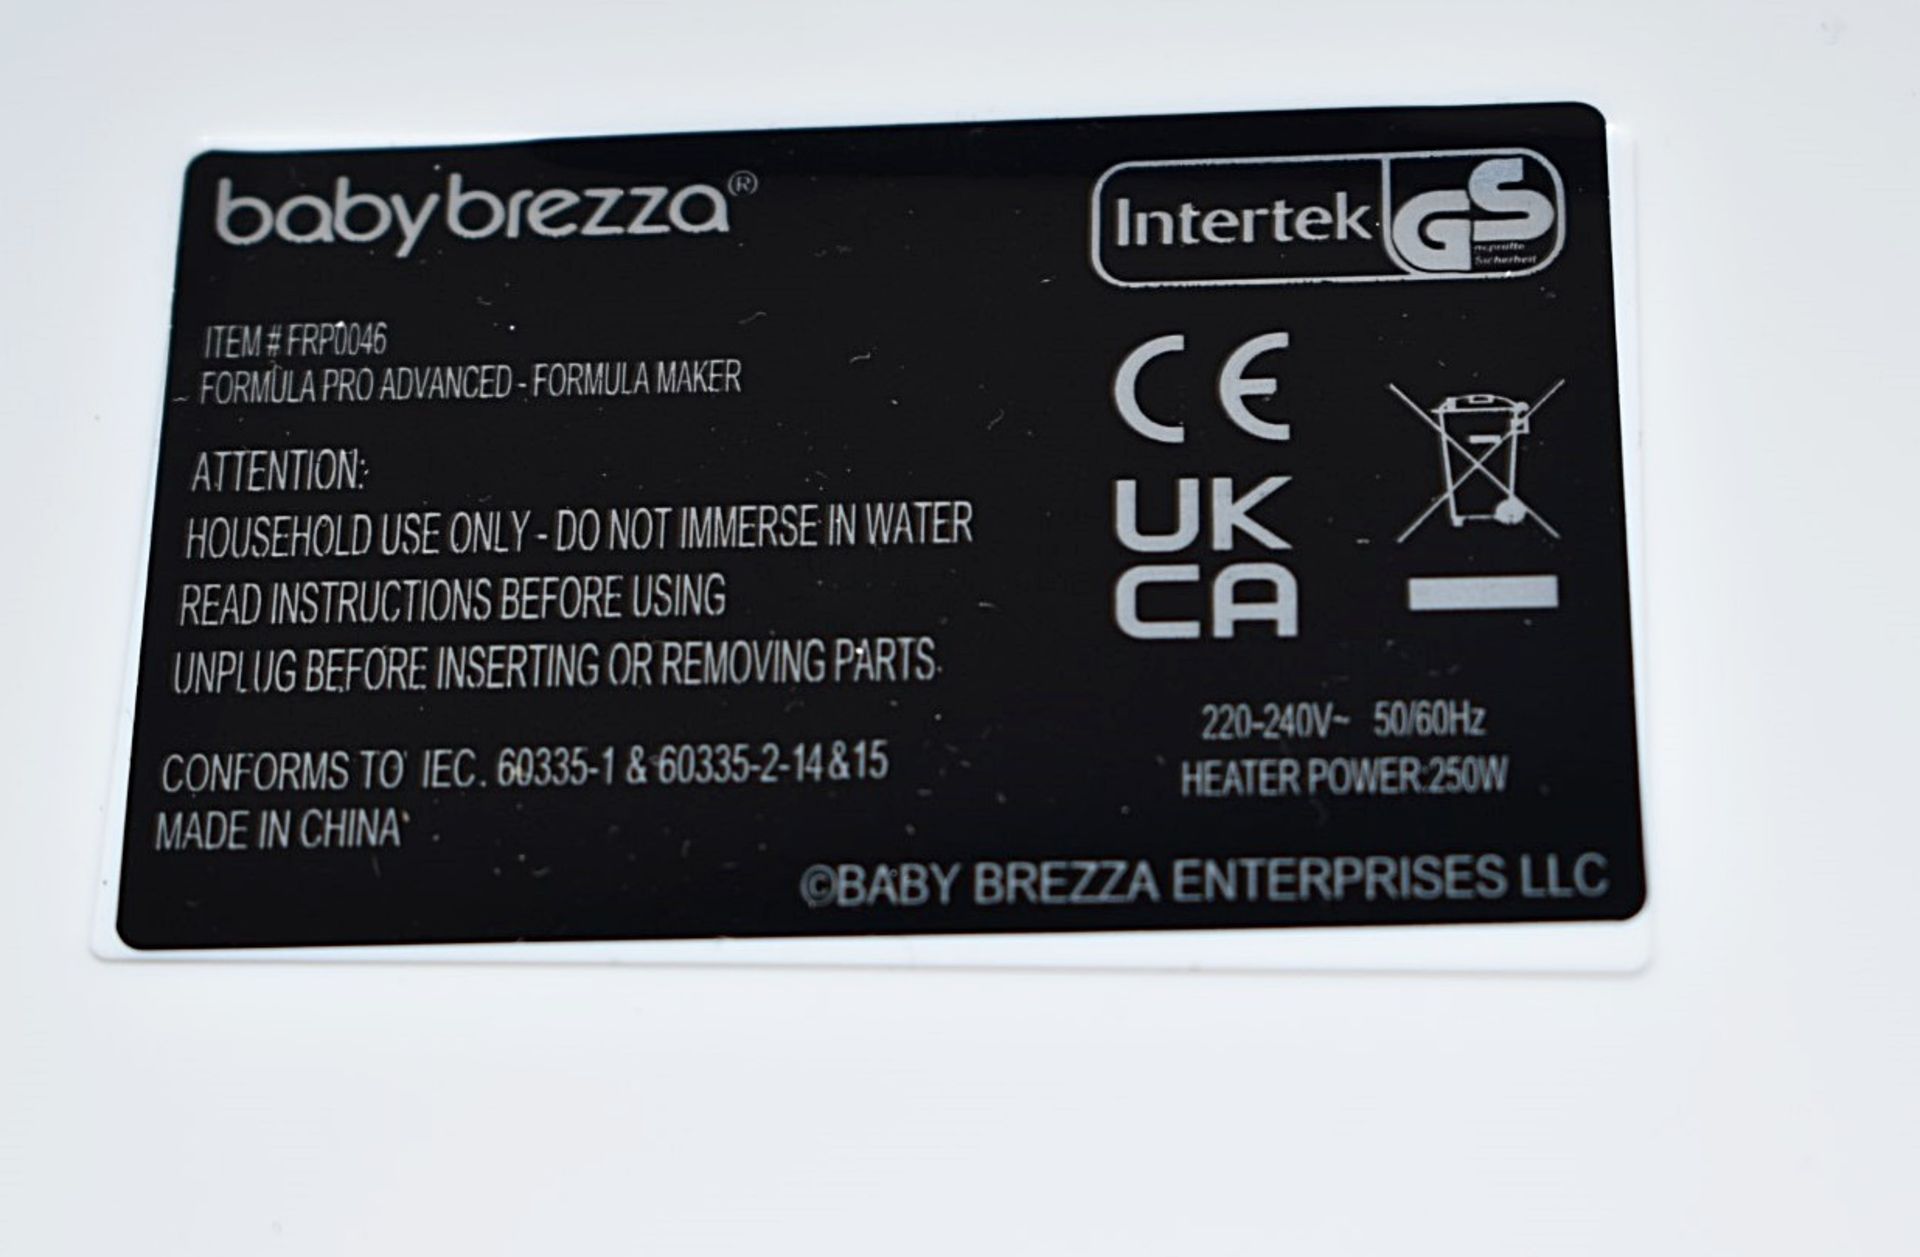 1 x BABY BREZZA Formula Pro Advanced Formula Dispenser Machine - Original Price £235.00 - Boxed - Image 12 of 12